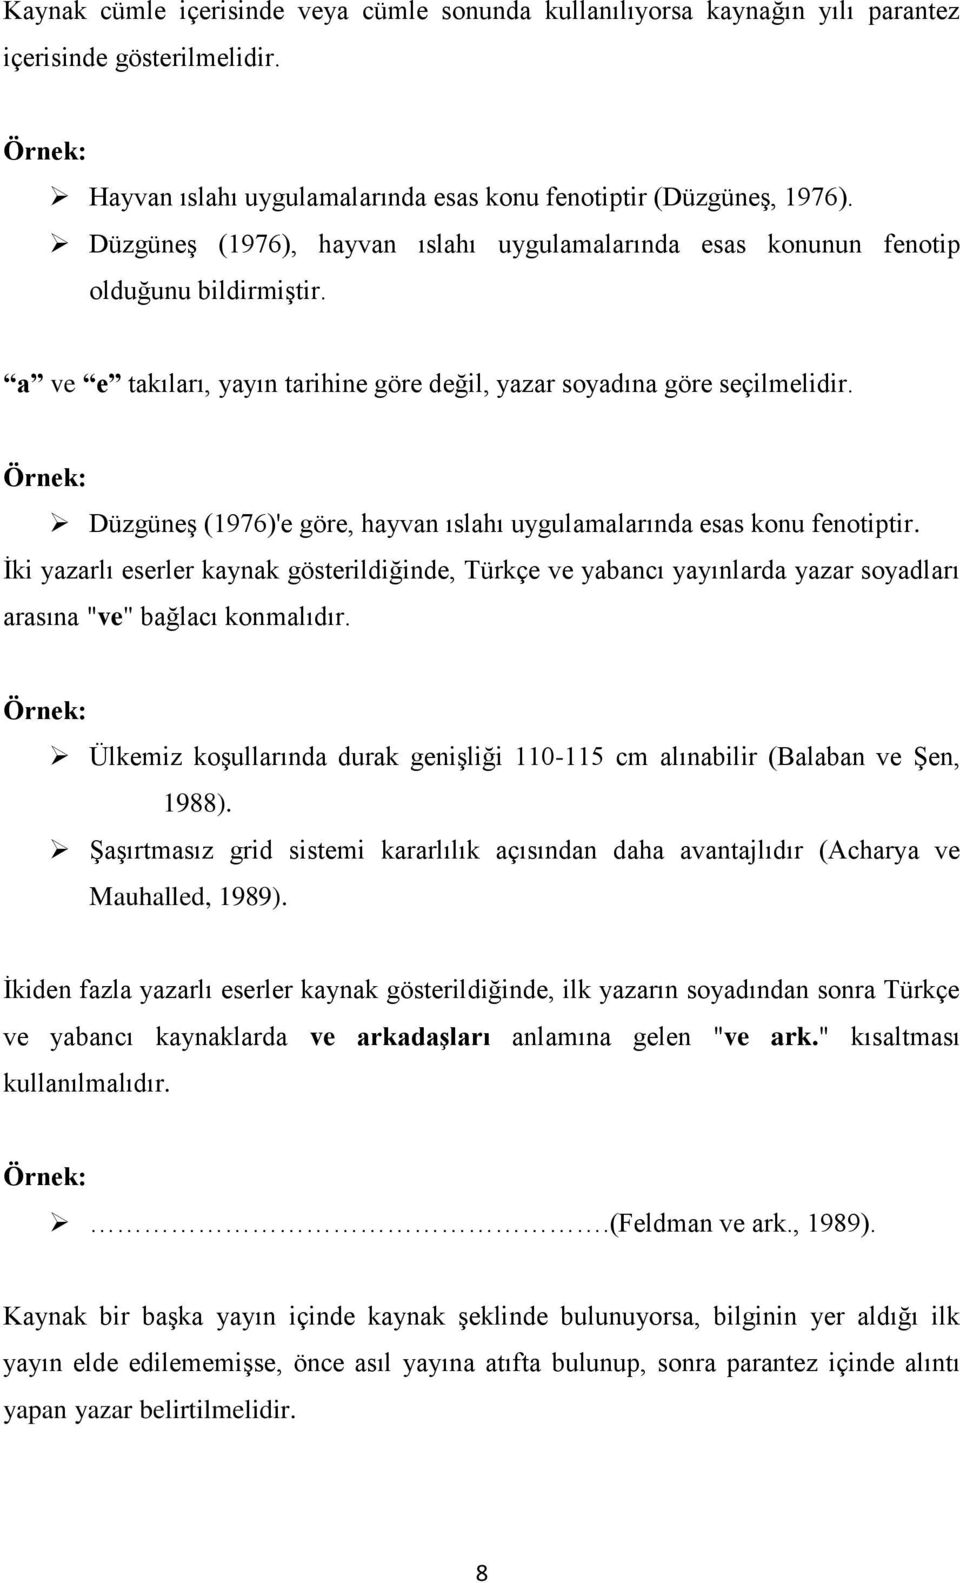 Düzgüneş (1976)'e göre, hayvan ıslahı uygulamalarında esas konu fenotiptir. İki yazarlı eserler kaynak gösterildiğinde, Türkçe ve yabancı yayınlarda yazar soyadları arasına "ve" bağlacı konmalıdır.